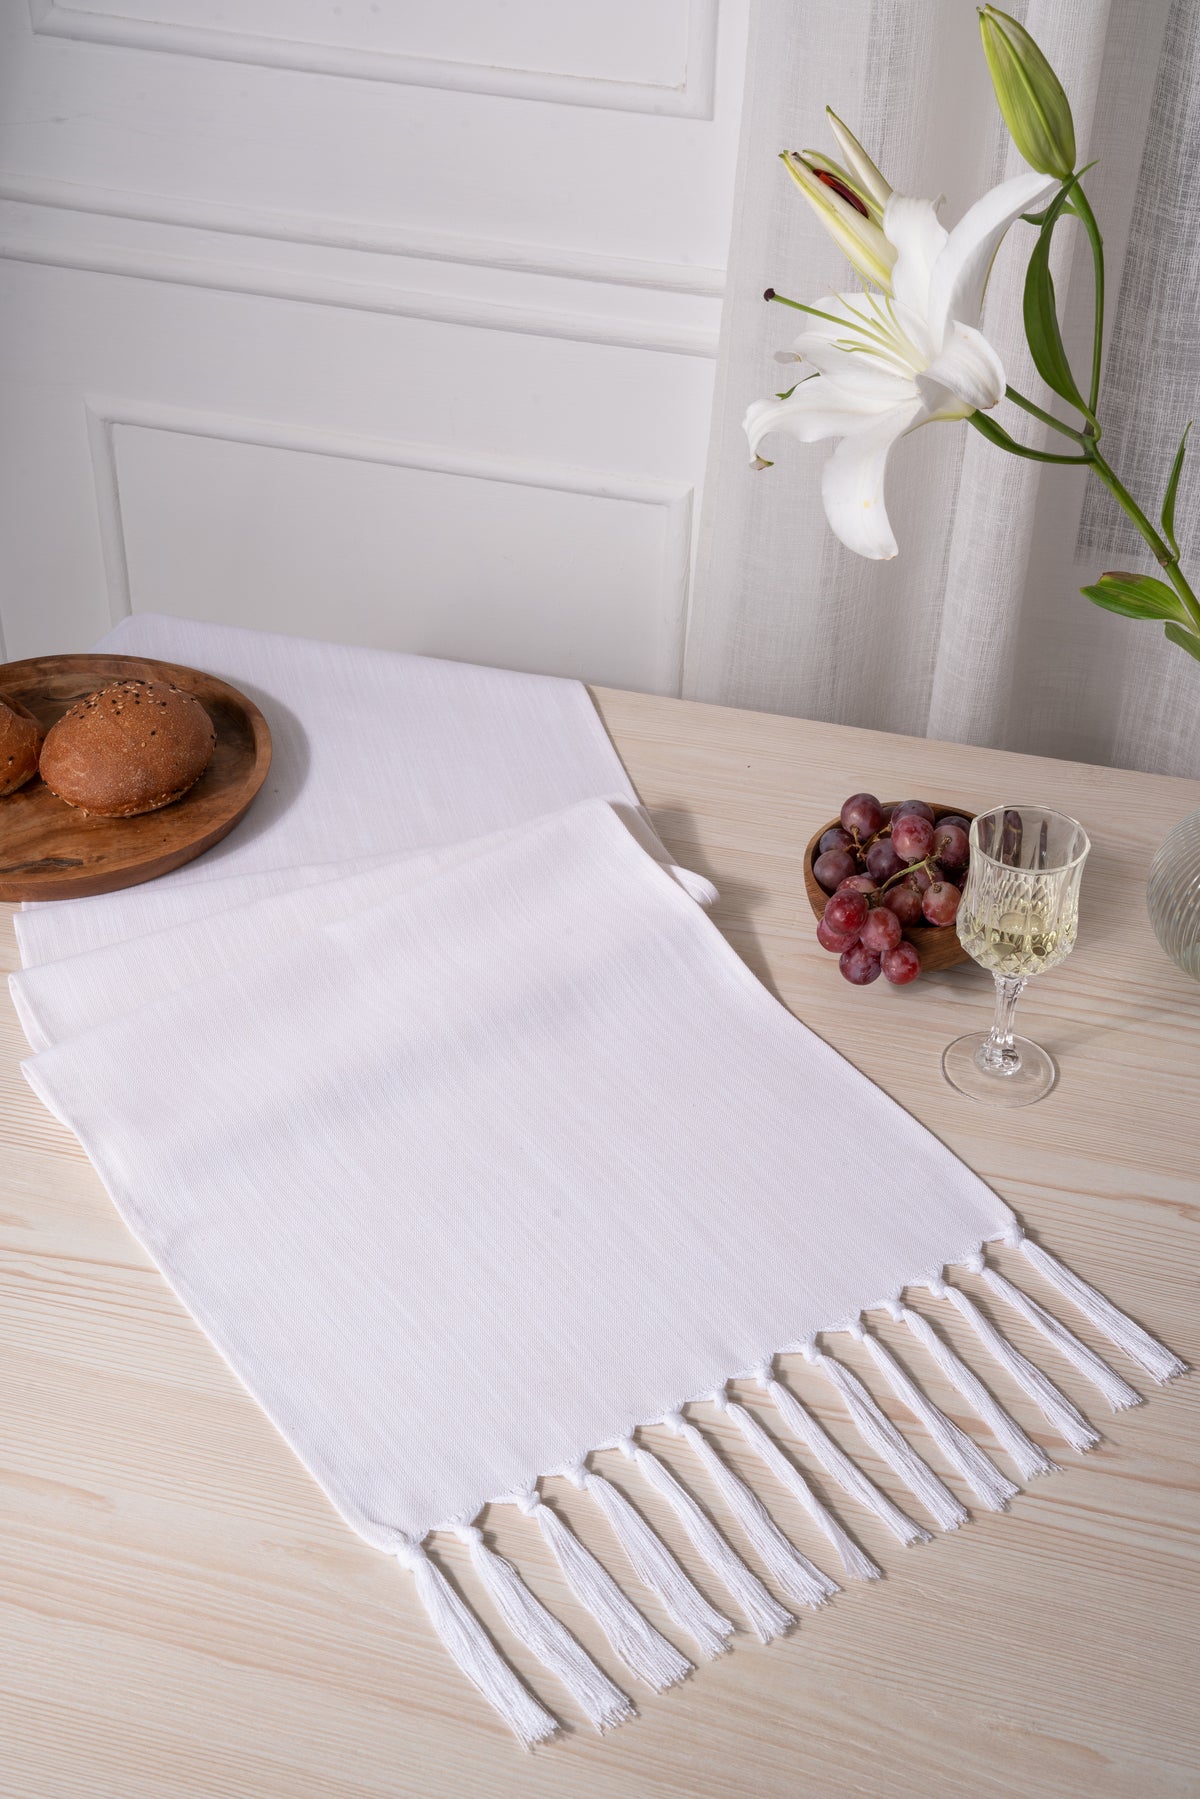 Chambray Cream and White Linen Textured Table Runner - Tassel